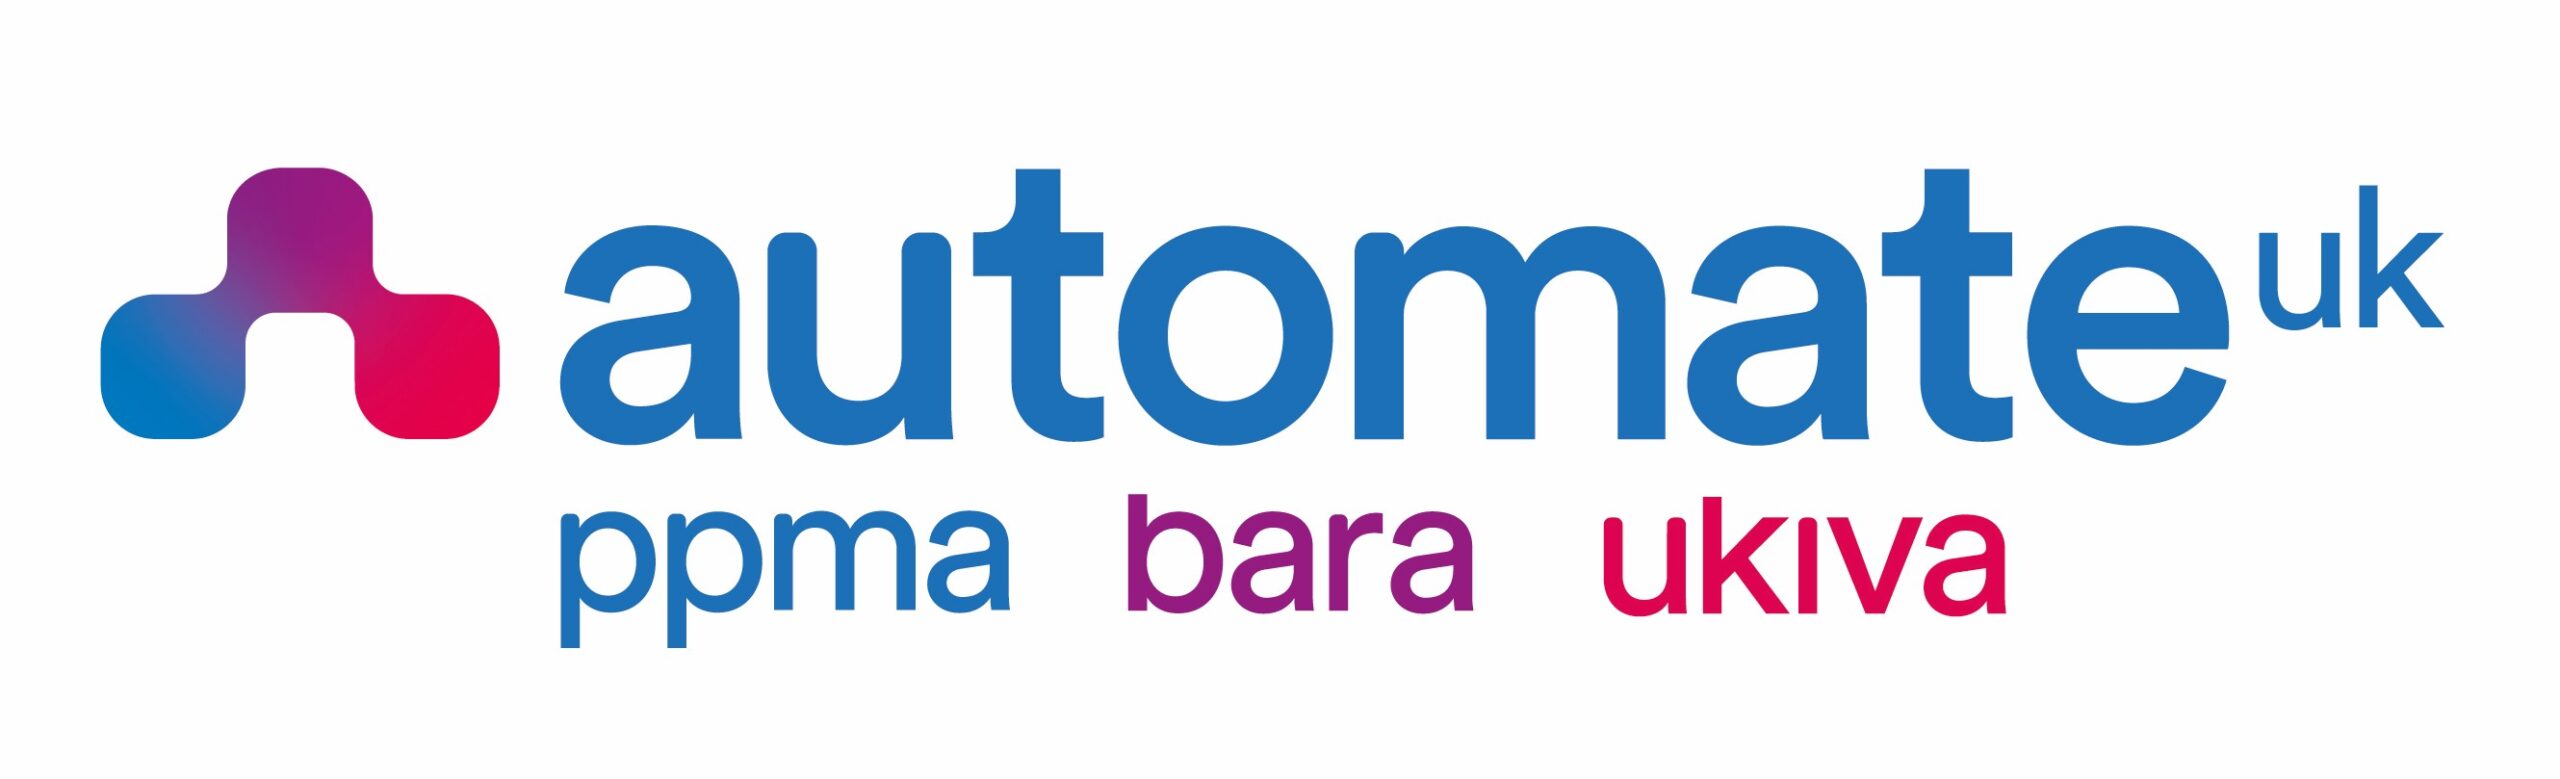 Automate UK NEW logos